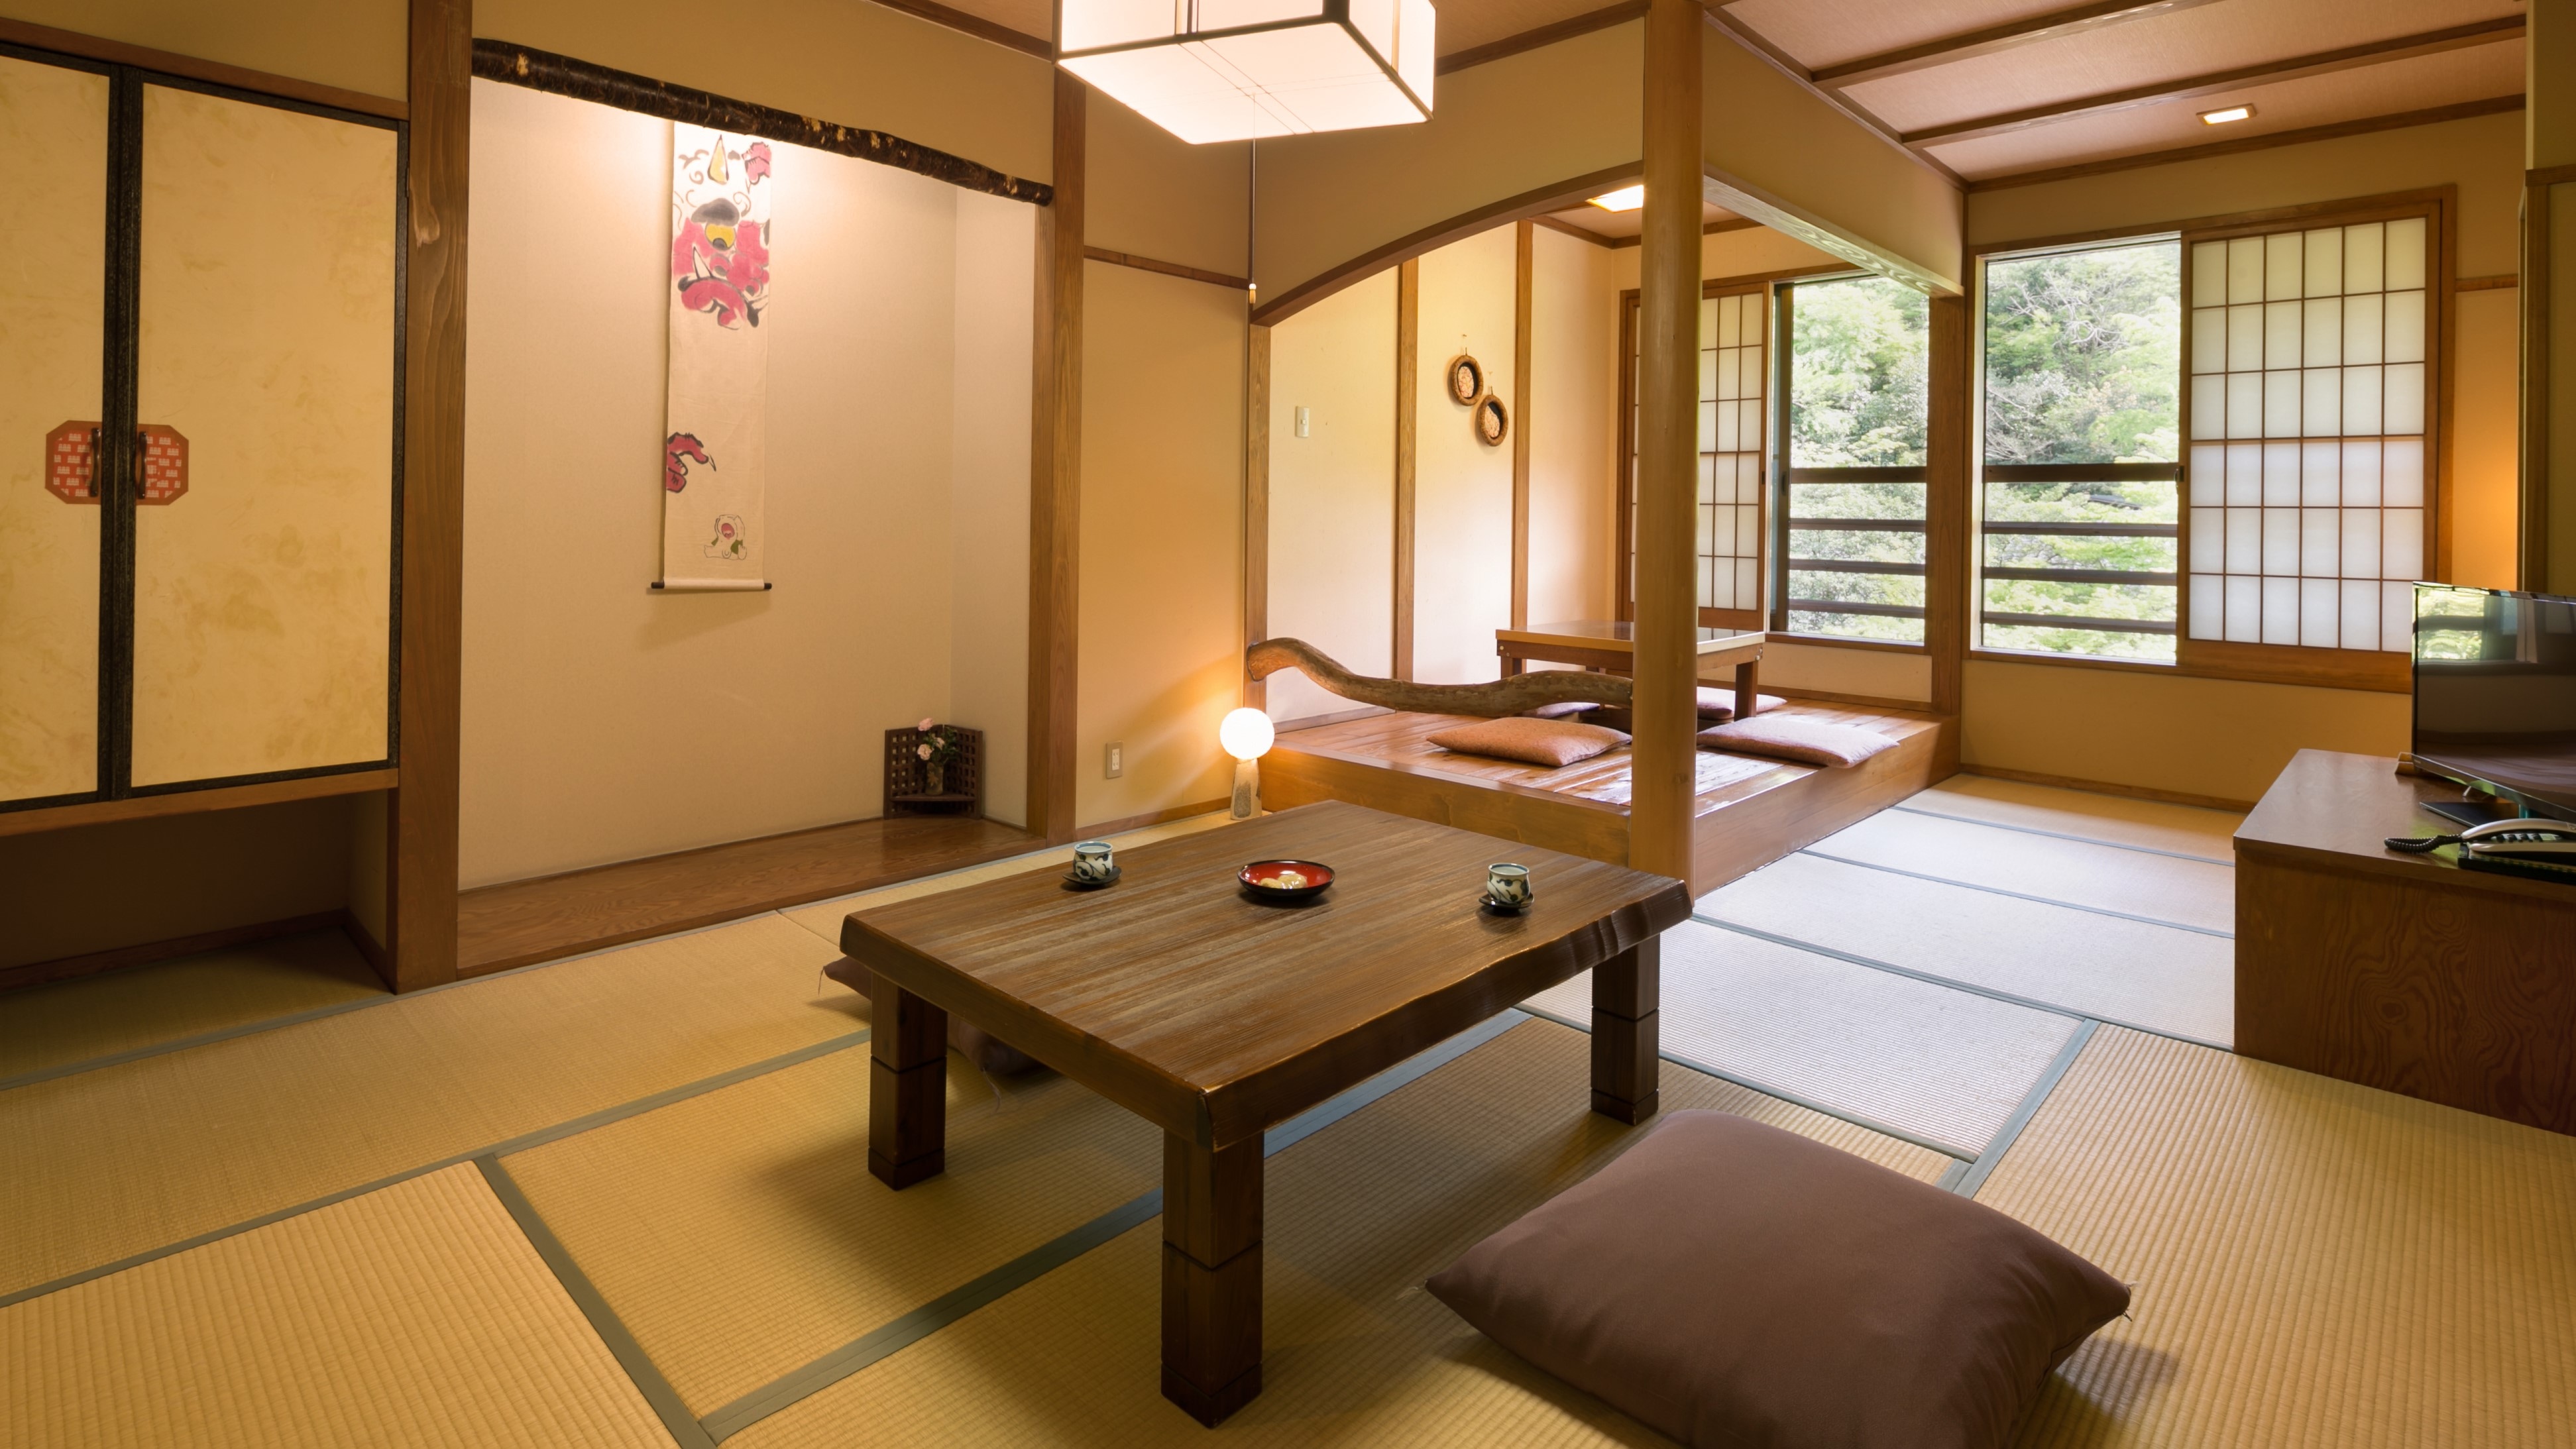 8张榻榻米的日式房间的例子。这种类型有3个房间。